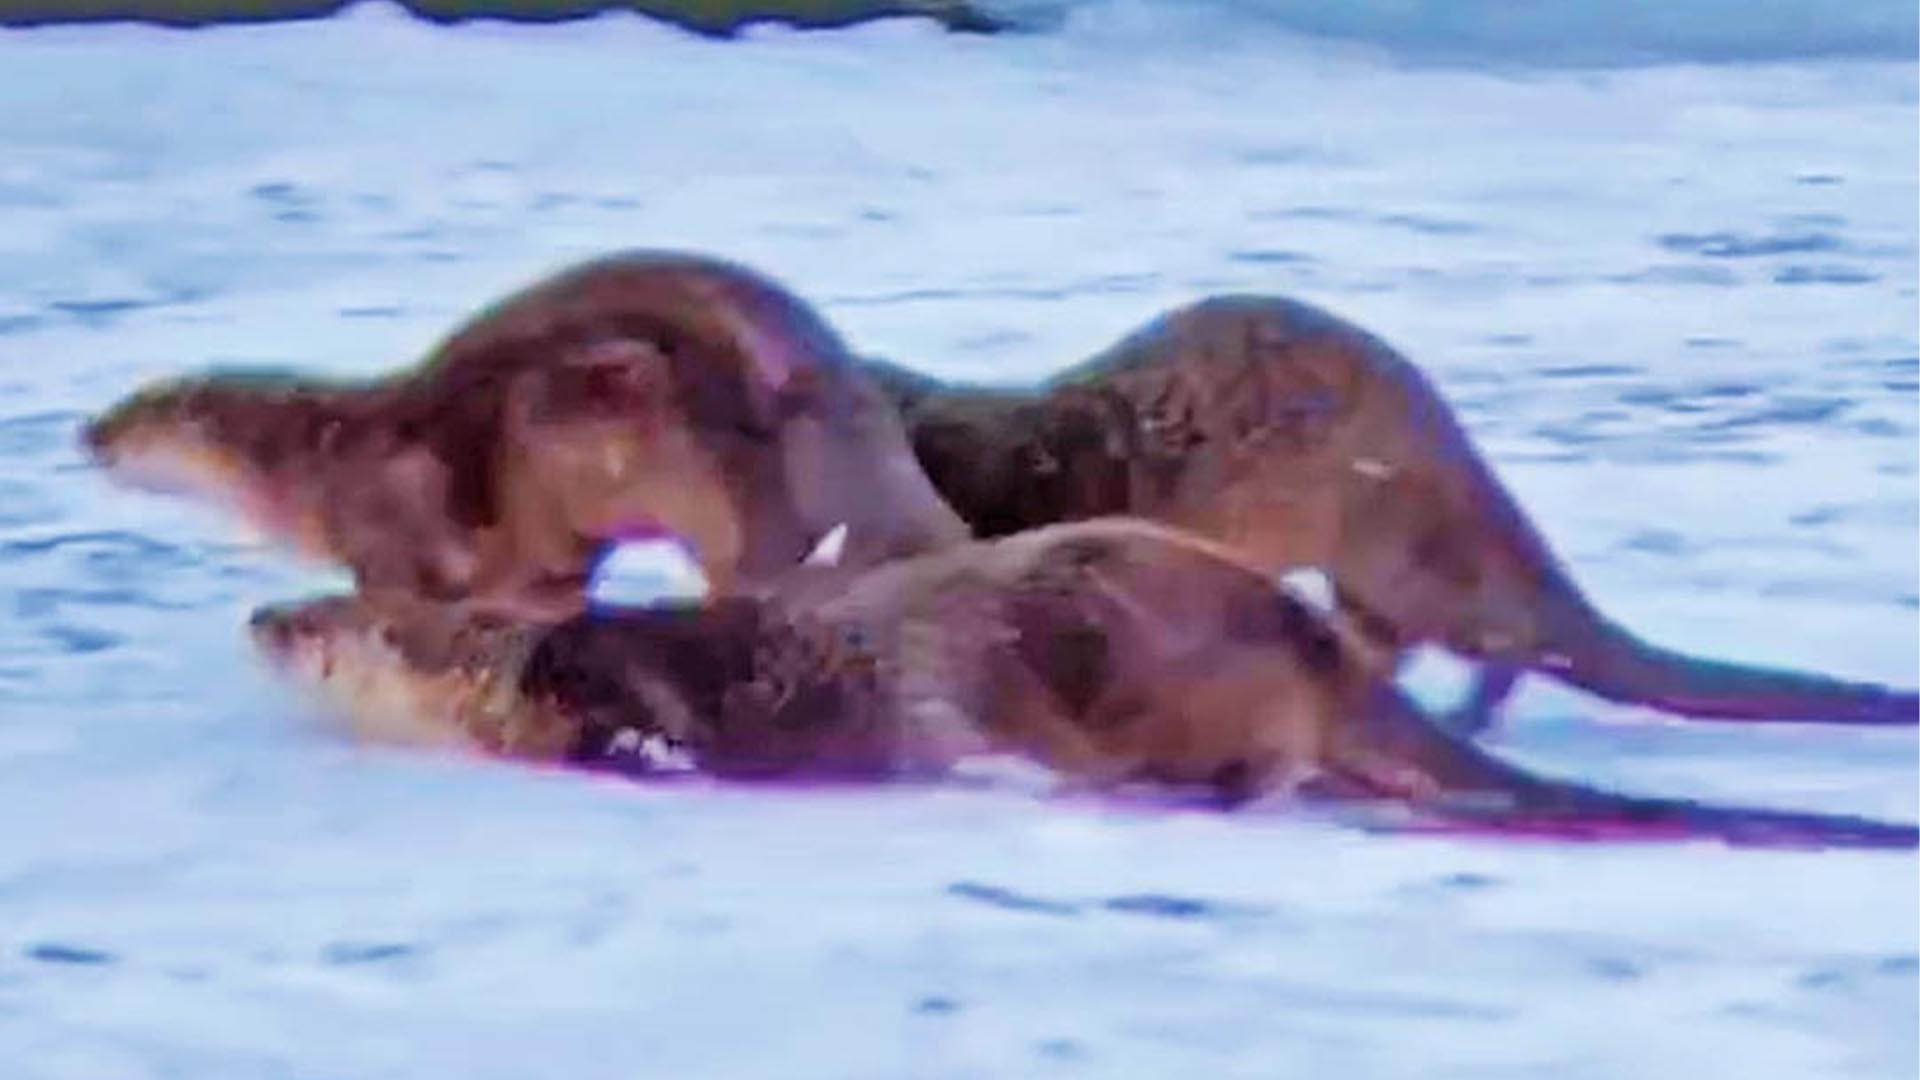 Wrestling Otters Slip and Slide on Ice